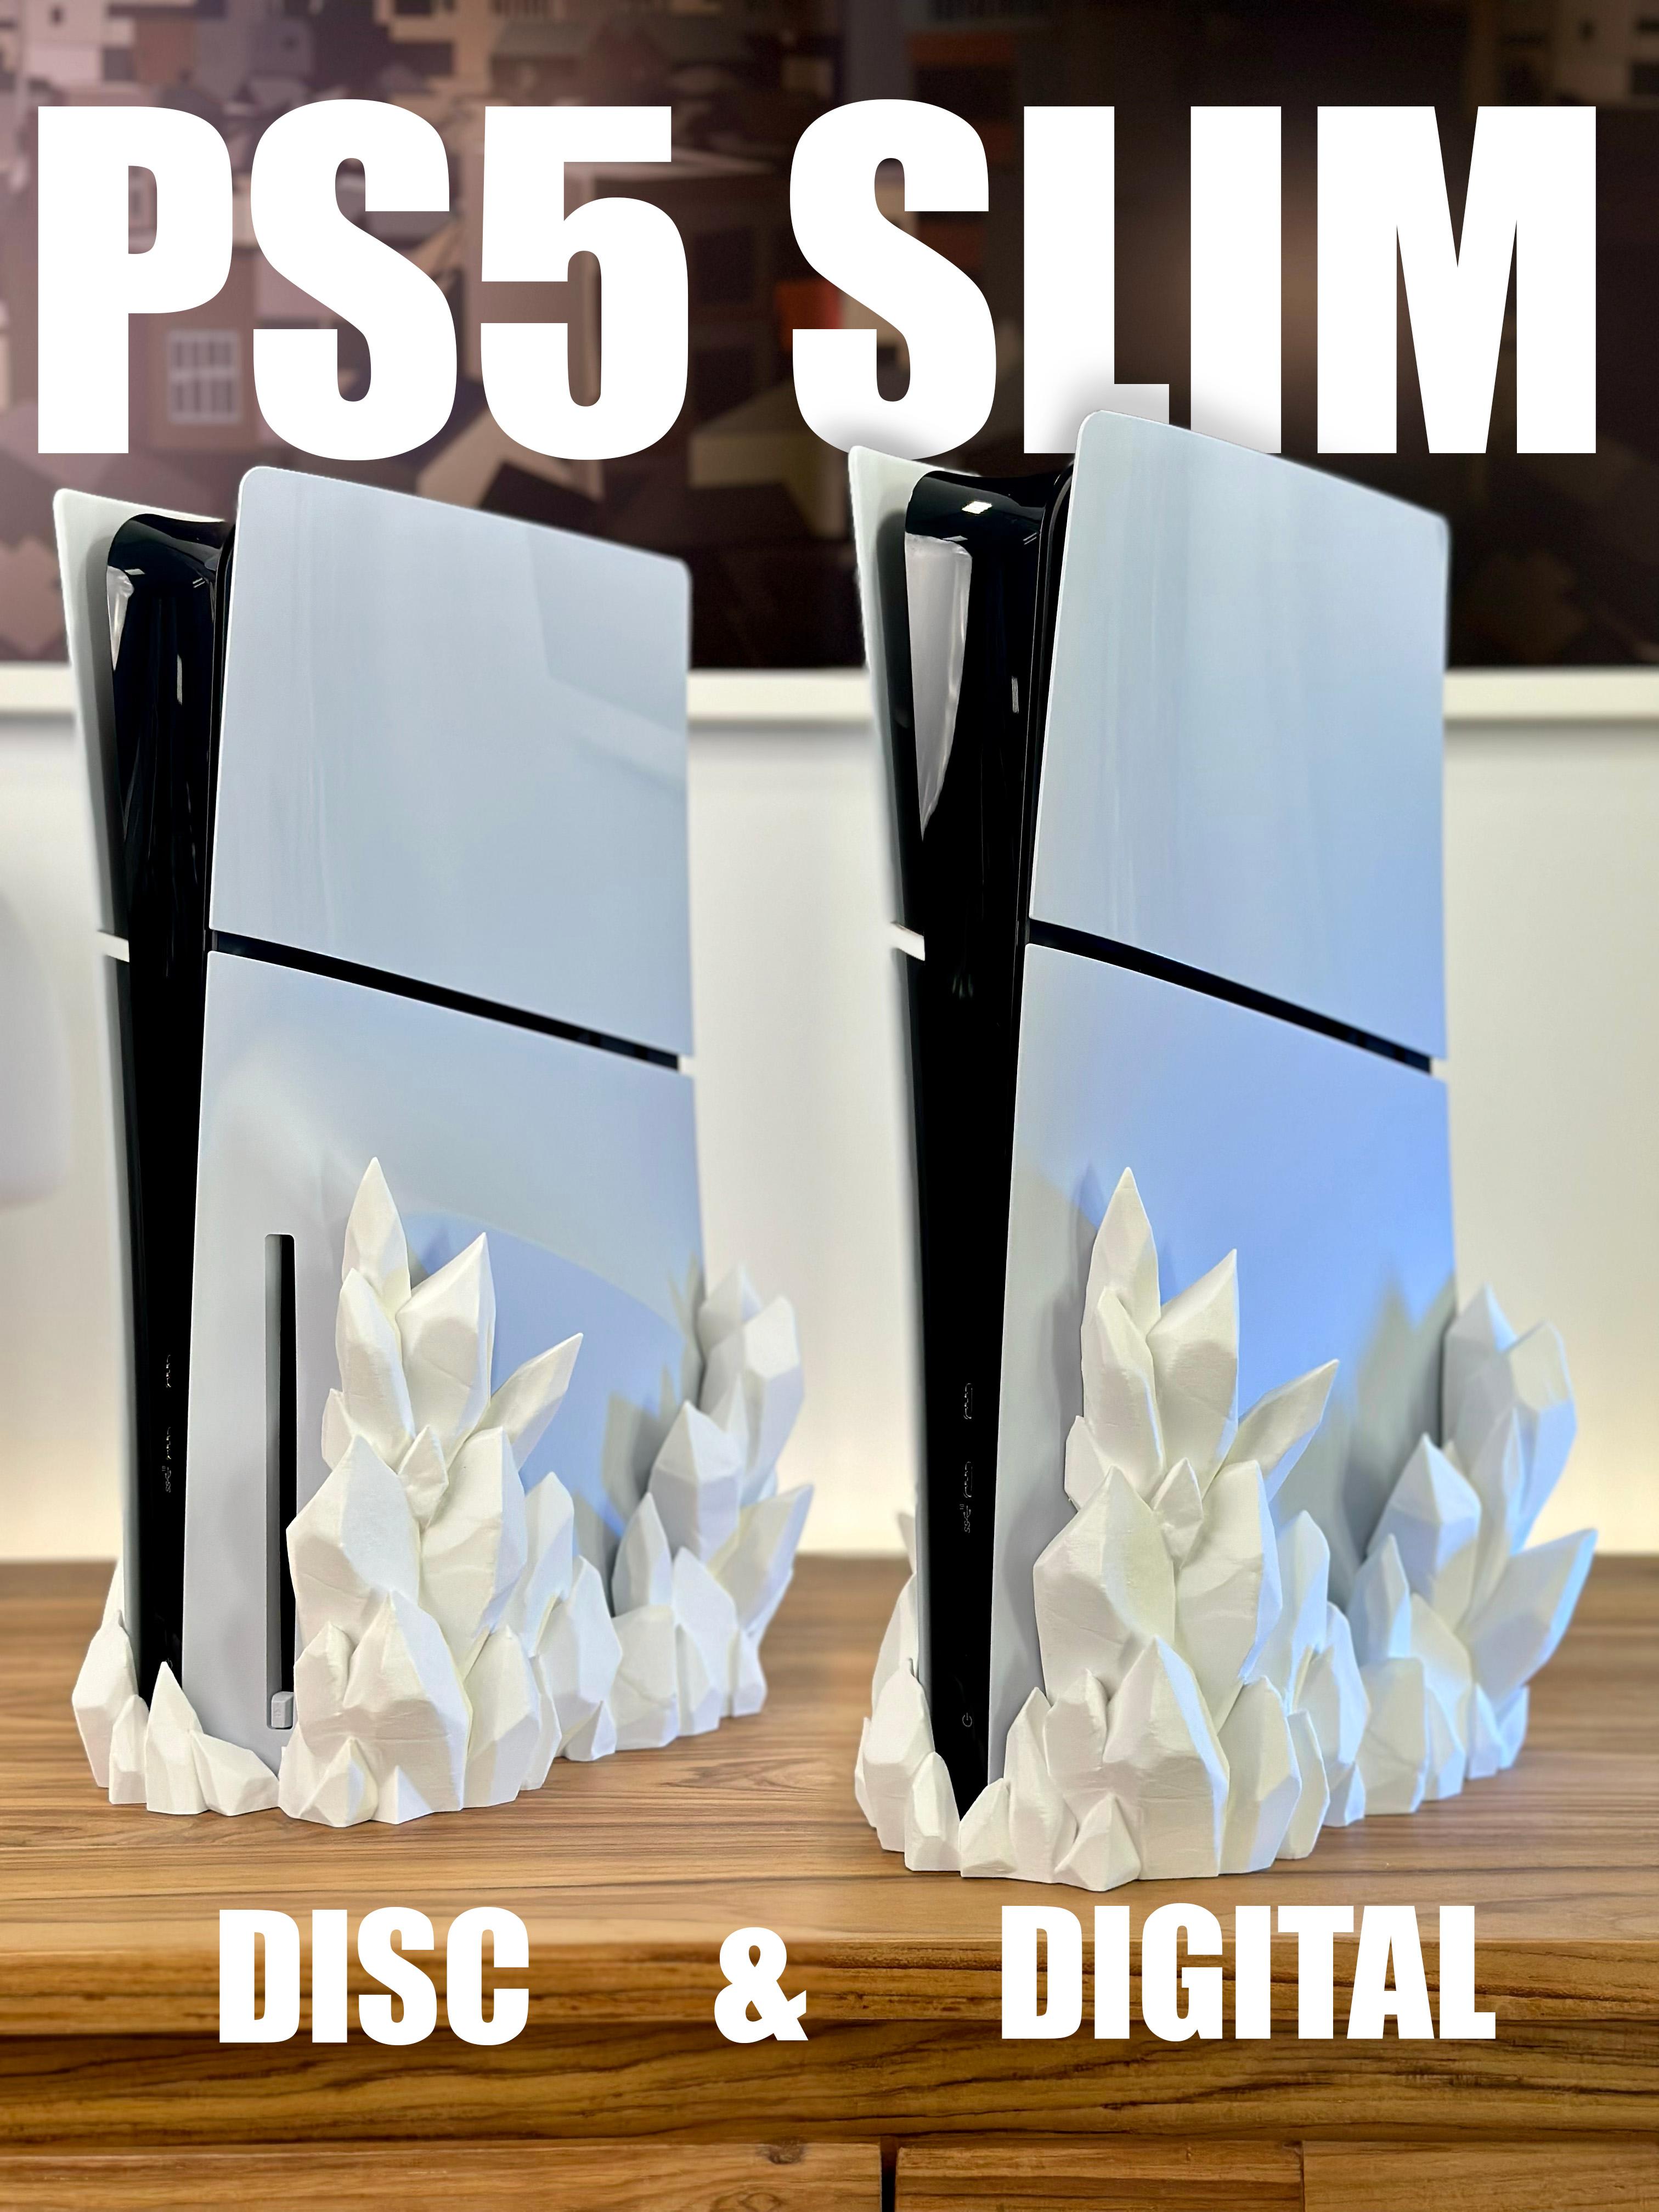 PS5 Slim Crystal Dock - DIGITAL & DISC version 3d model